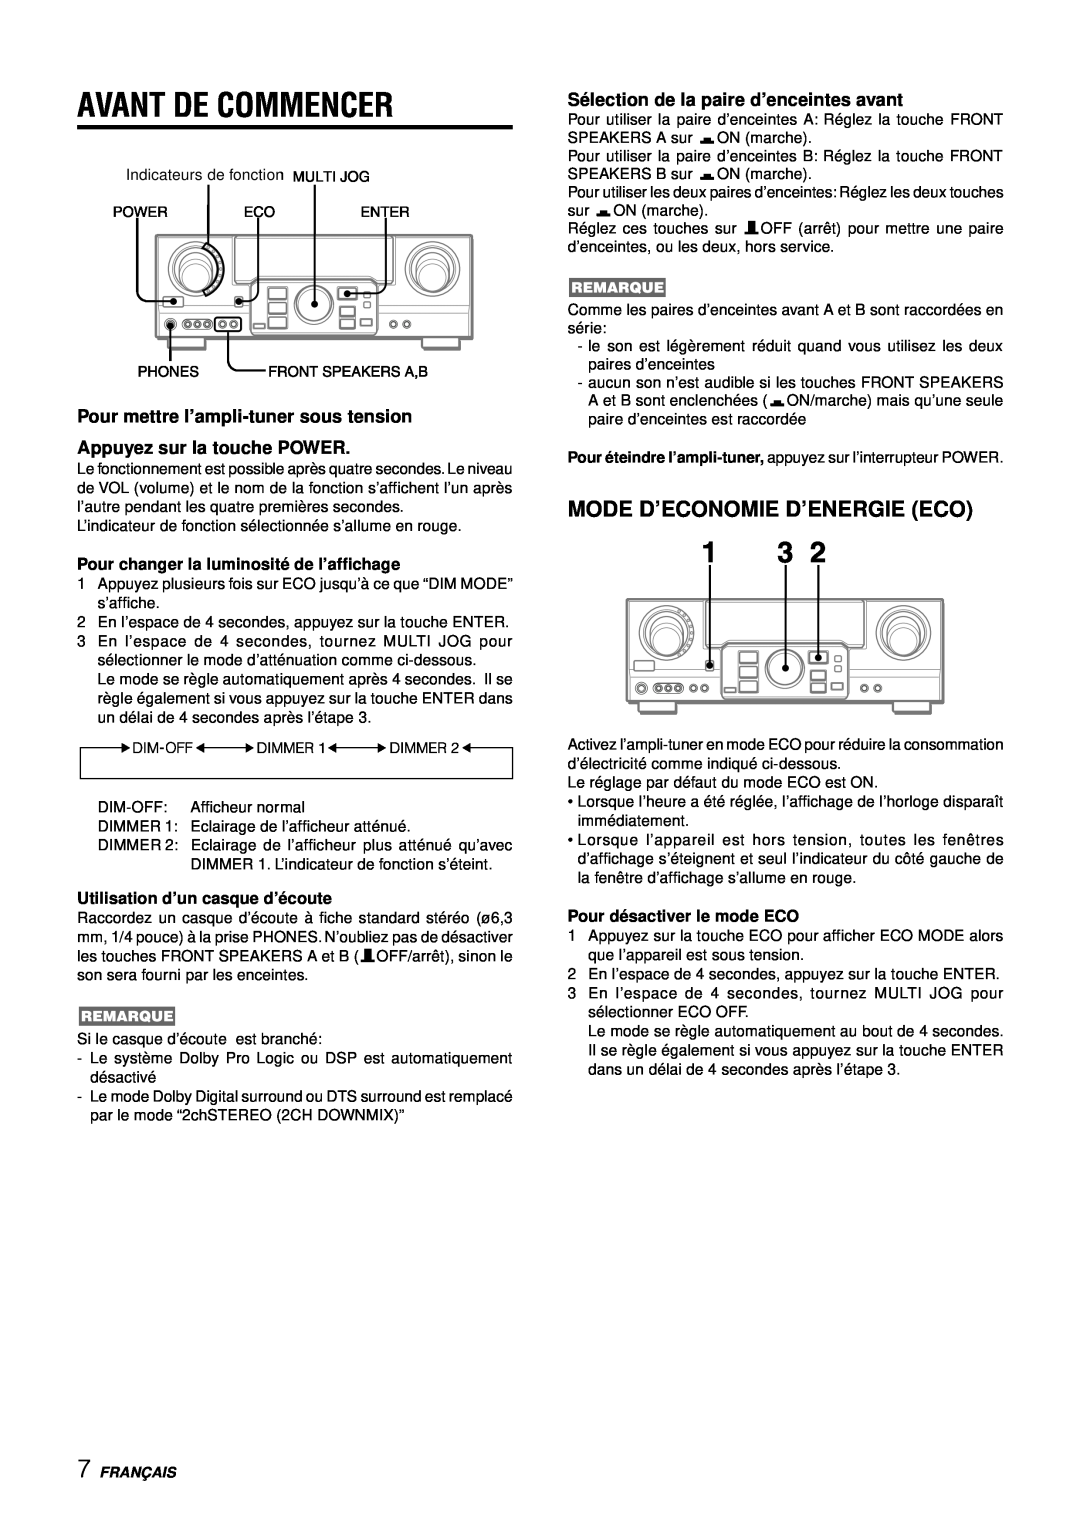 Aiwa AV-D97 manual Avant De Commencer, Mode D’Economie D’Energie Eco, Sé lection de la paire d’enceintes avant, Franç Ais 